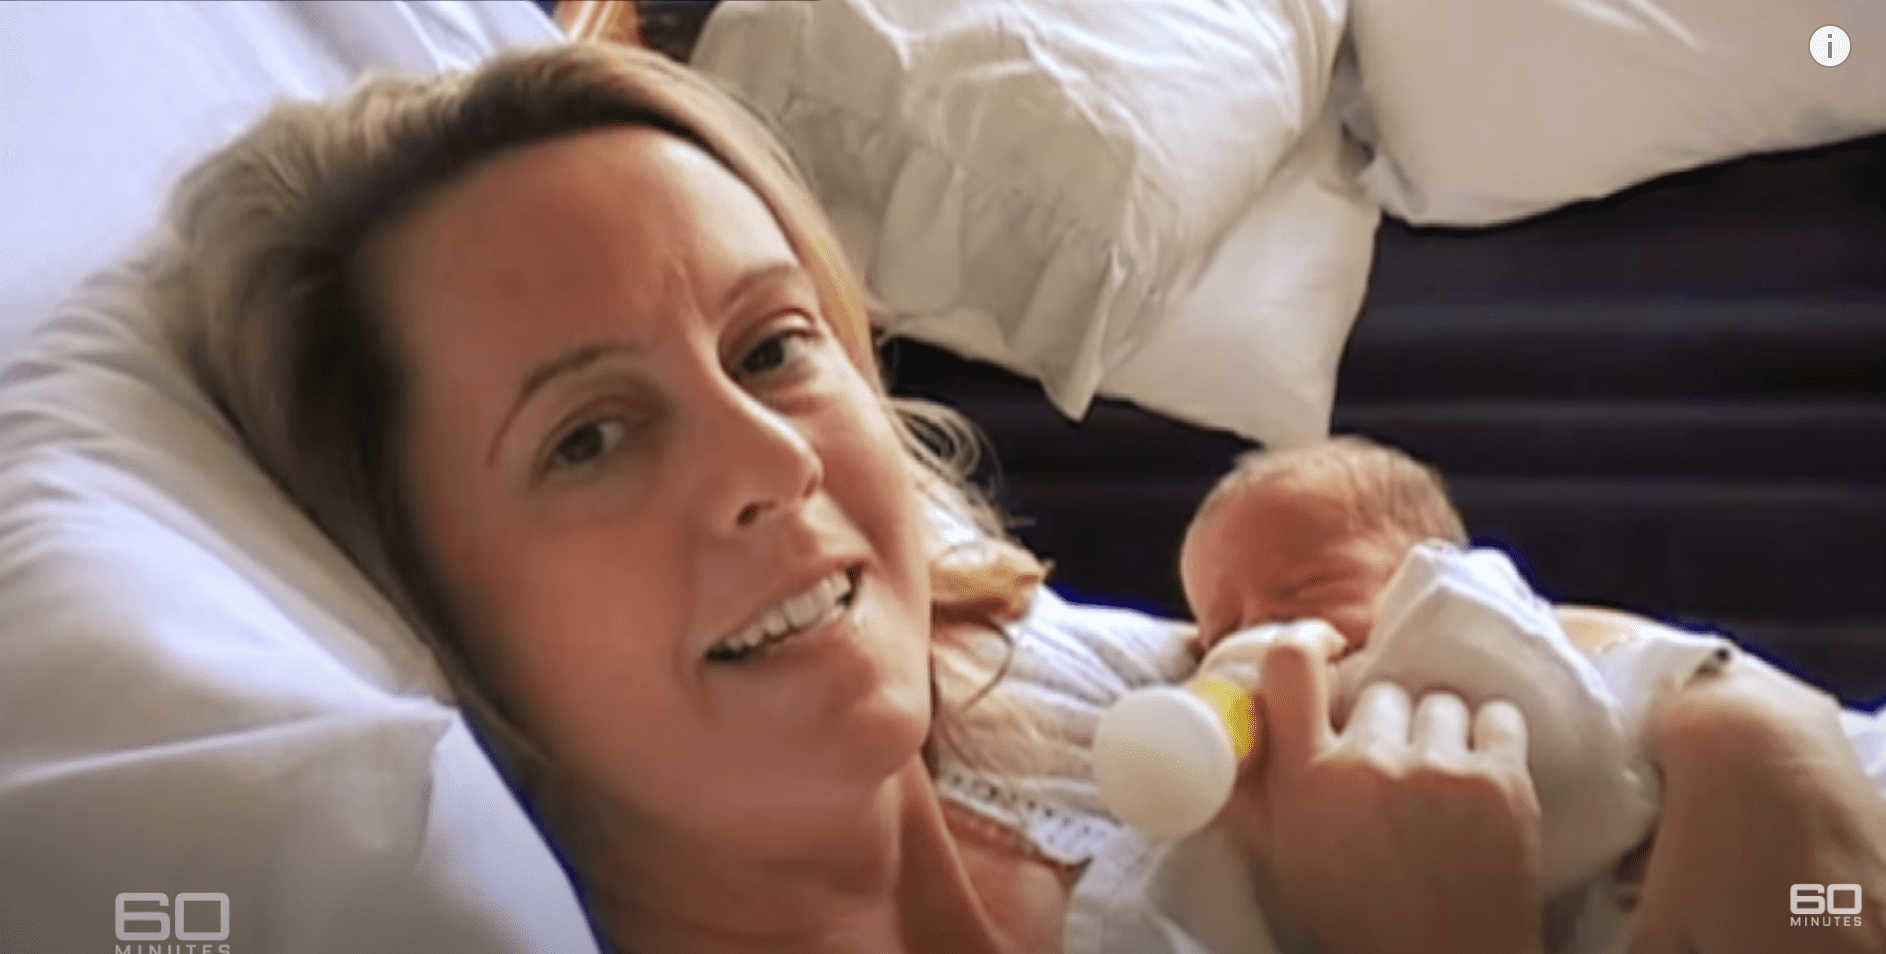 Carolyn Savage füttert Baby Logan nach der Geburt. | Quelle: Youtube.com/60 Minutes Australia